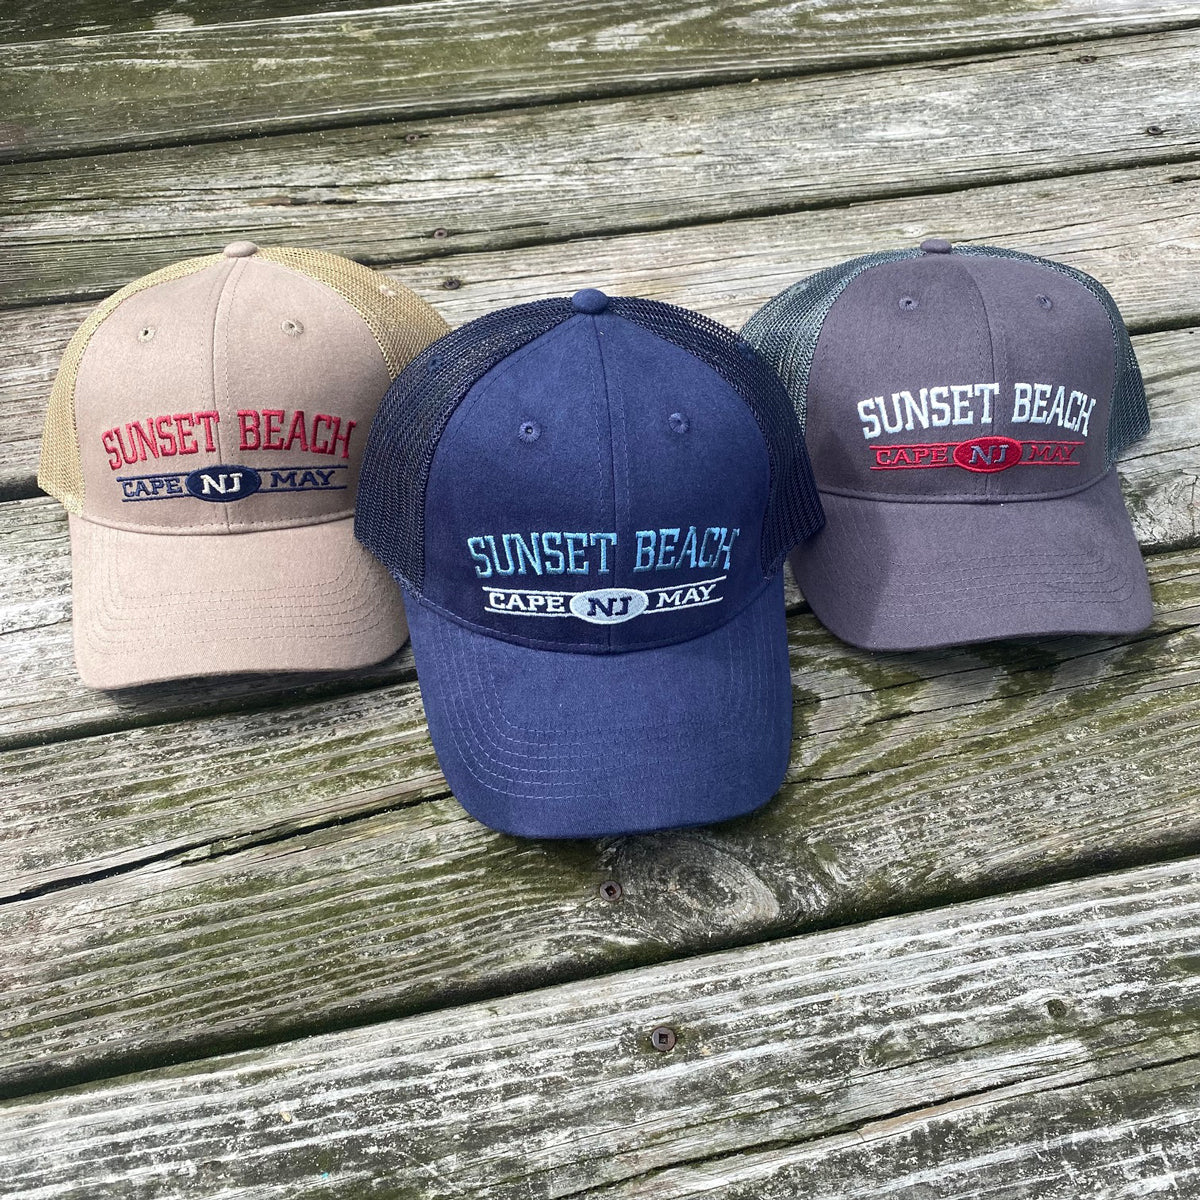 The Trucker Hat by NJ